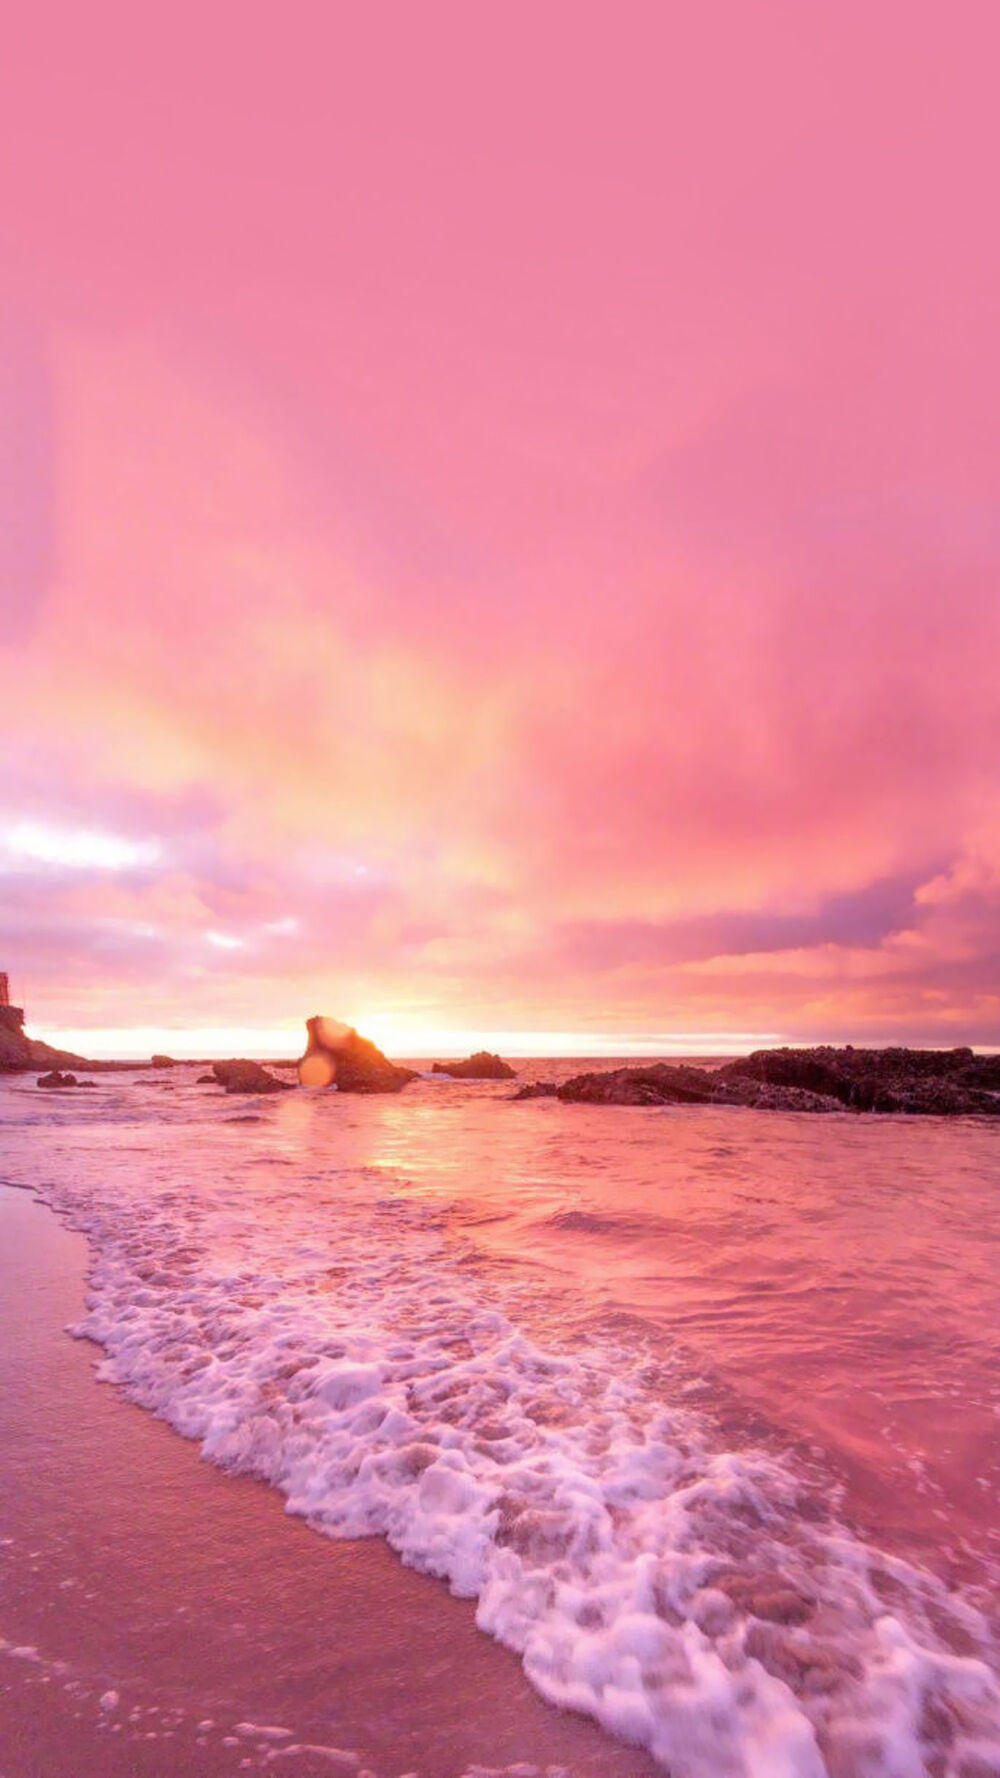 每一年的夏天都适合去看海 ,一半粉色的夕阳一半大海的蓝拼出完整的夏